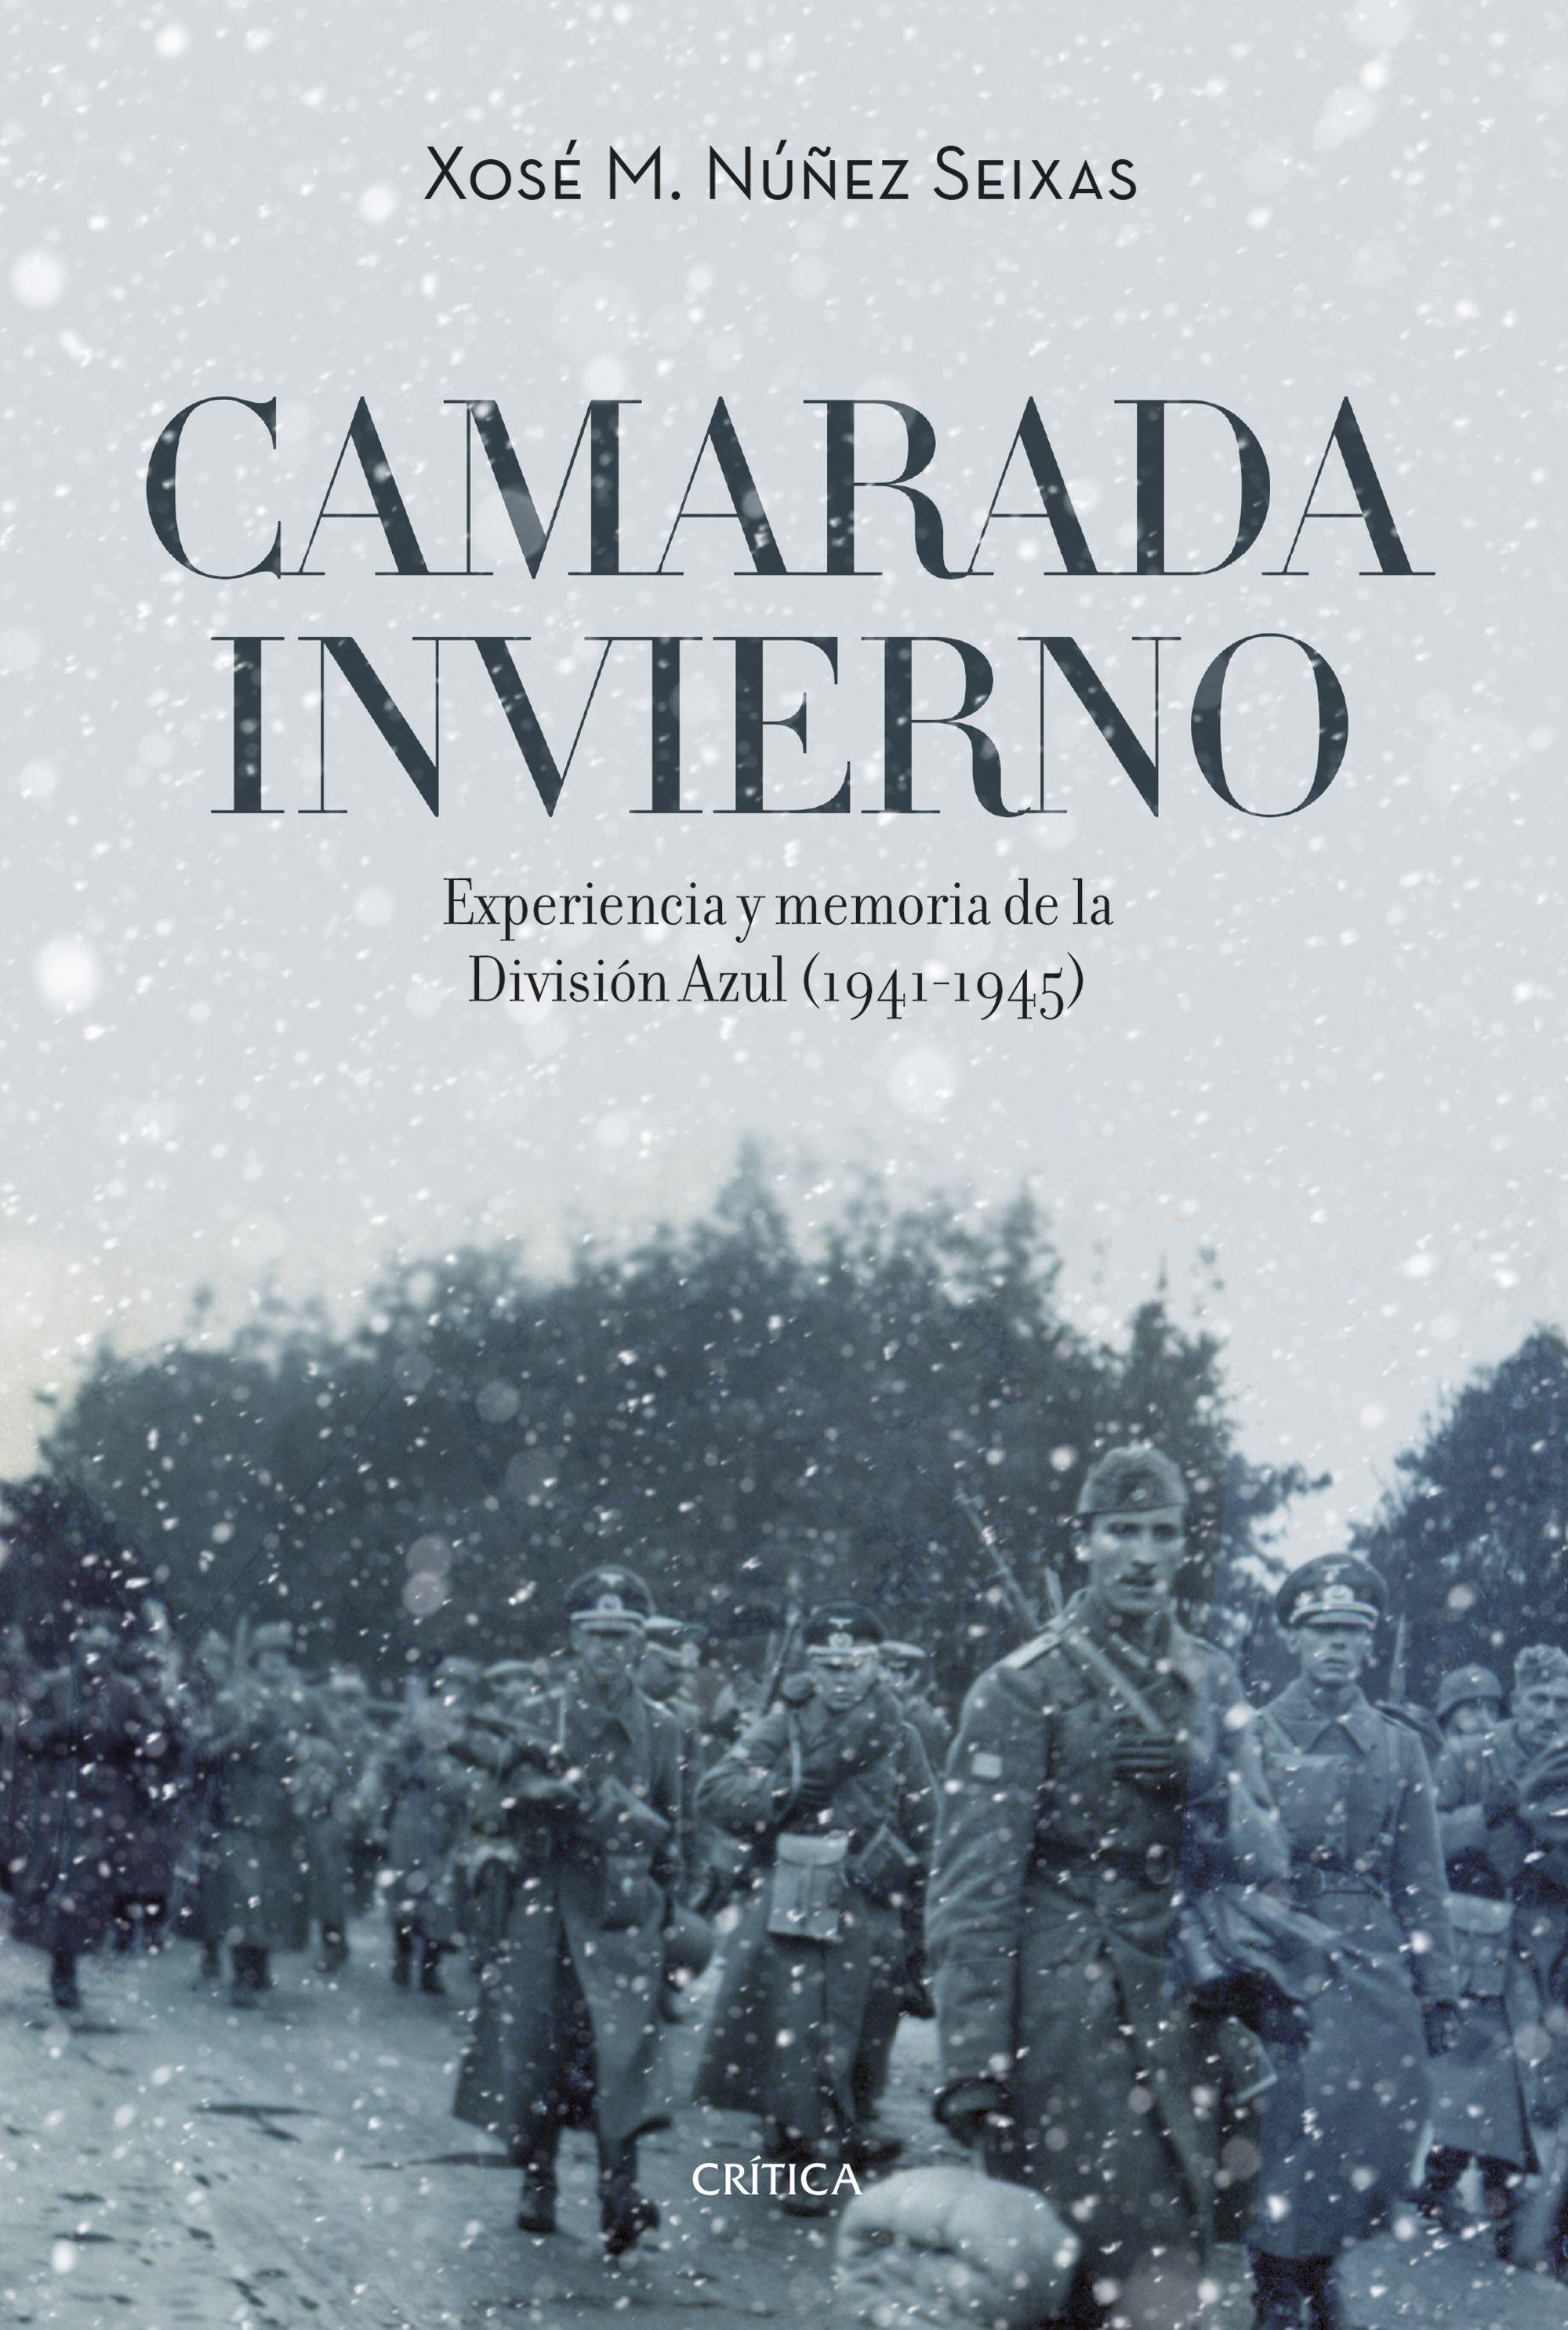 Camarada Invierno "Experiencia y Memoria de la División Azul (1941-1945)"